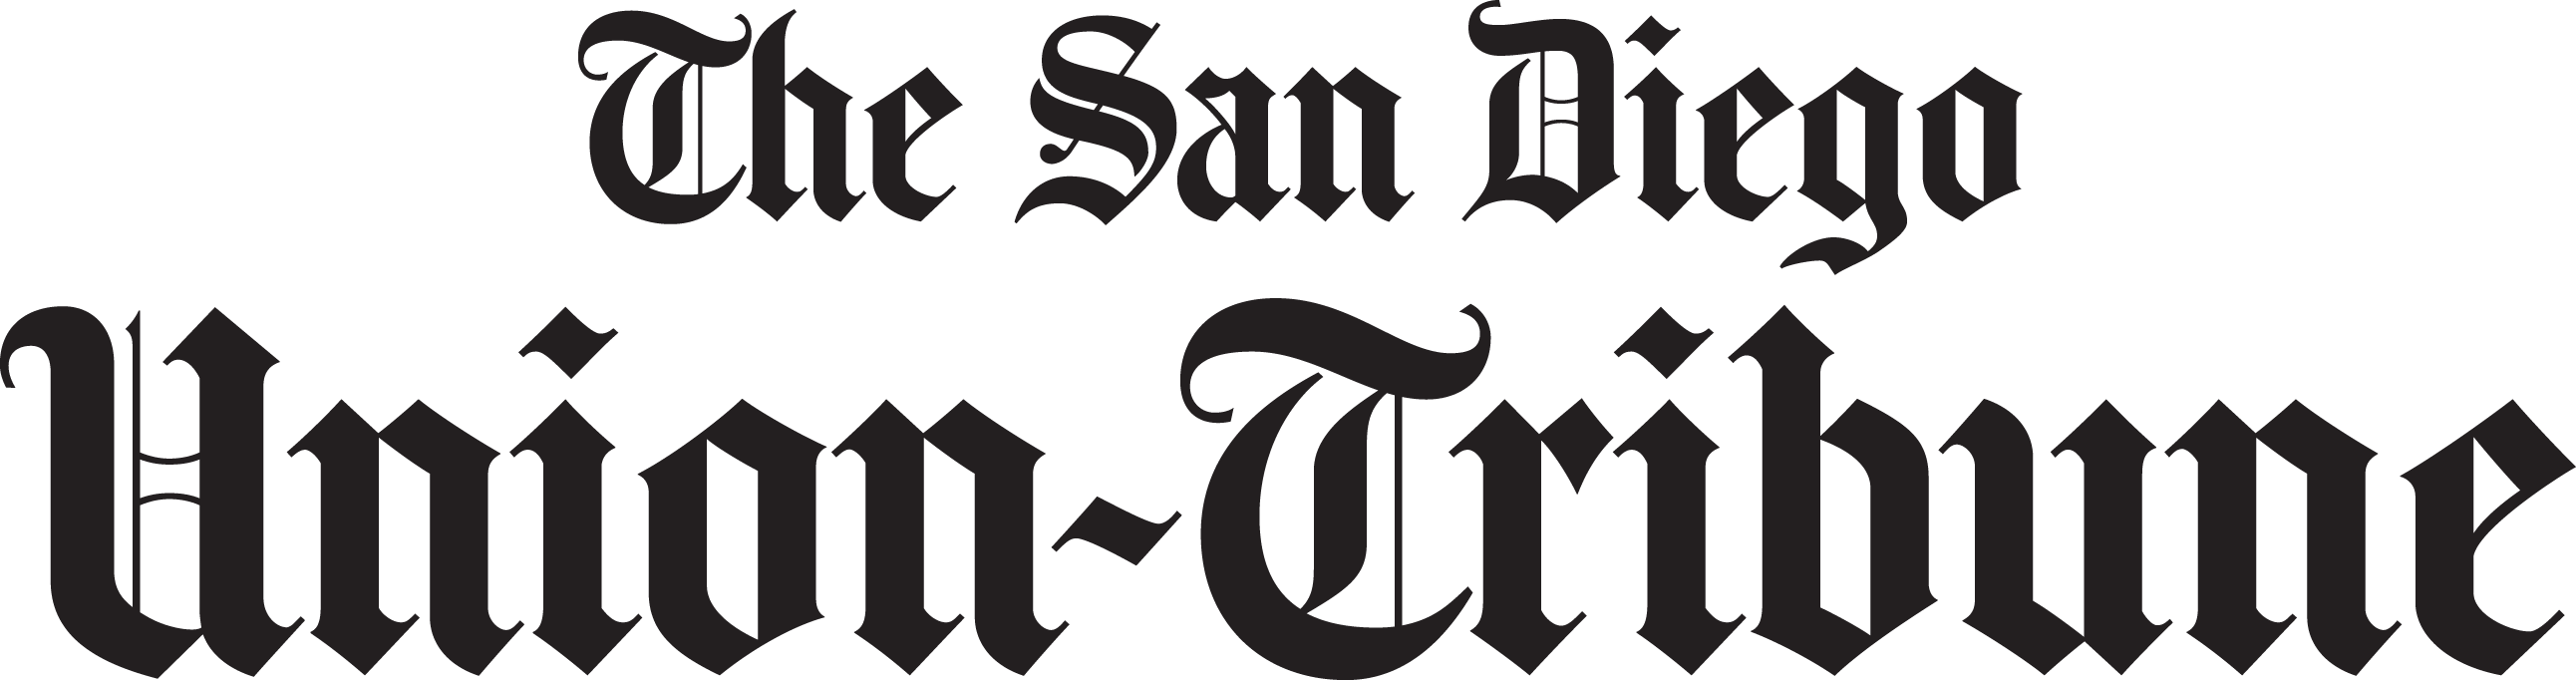 San Diego Union Tribune Logo Gaslamp San Diego - San Diego Union Tribune Logo (2584x682), Png Download